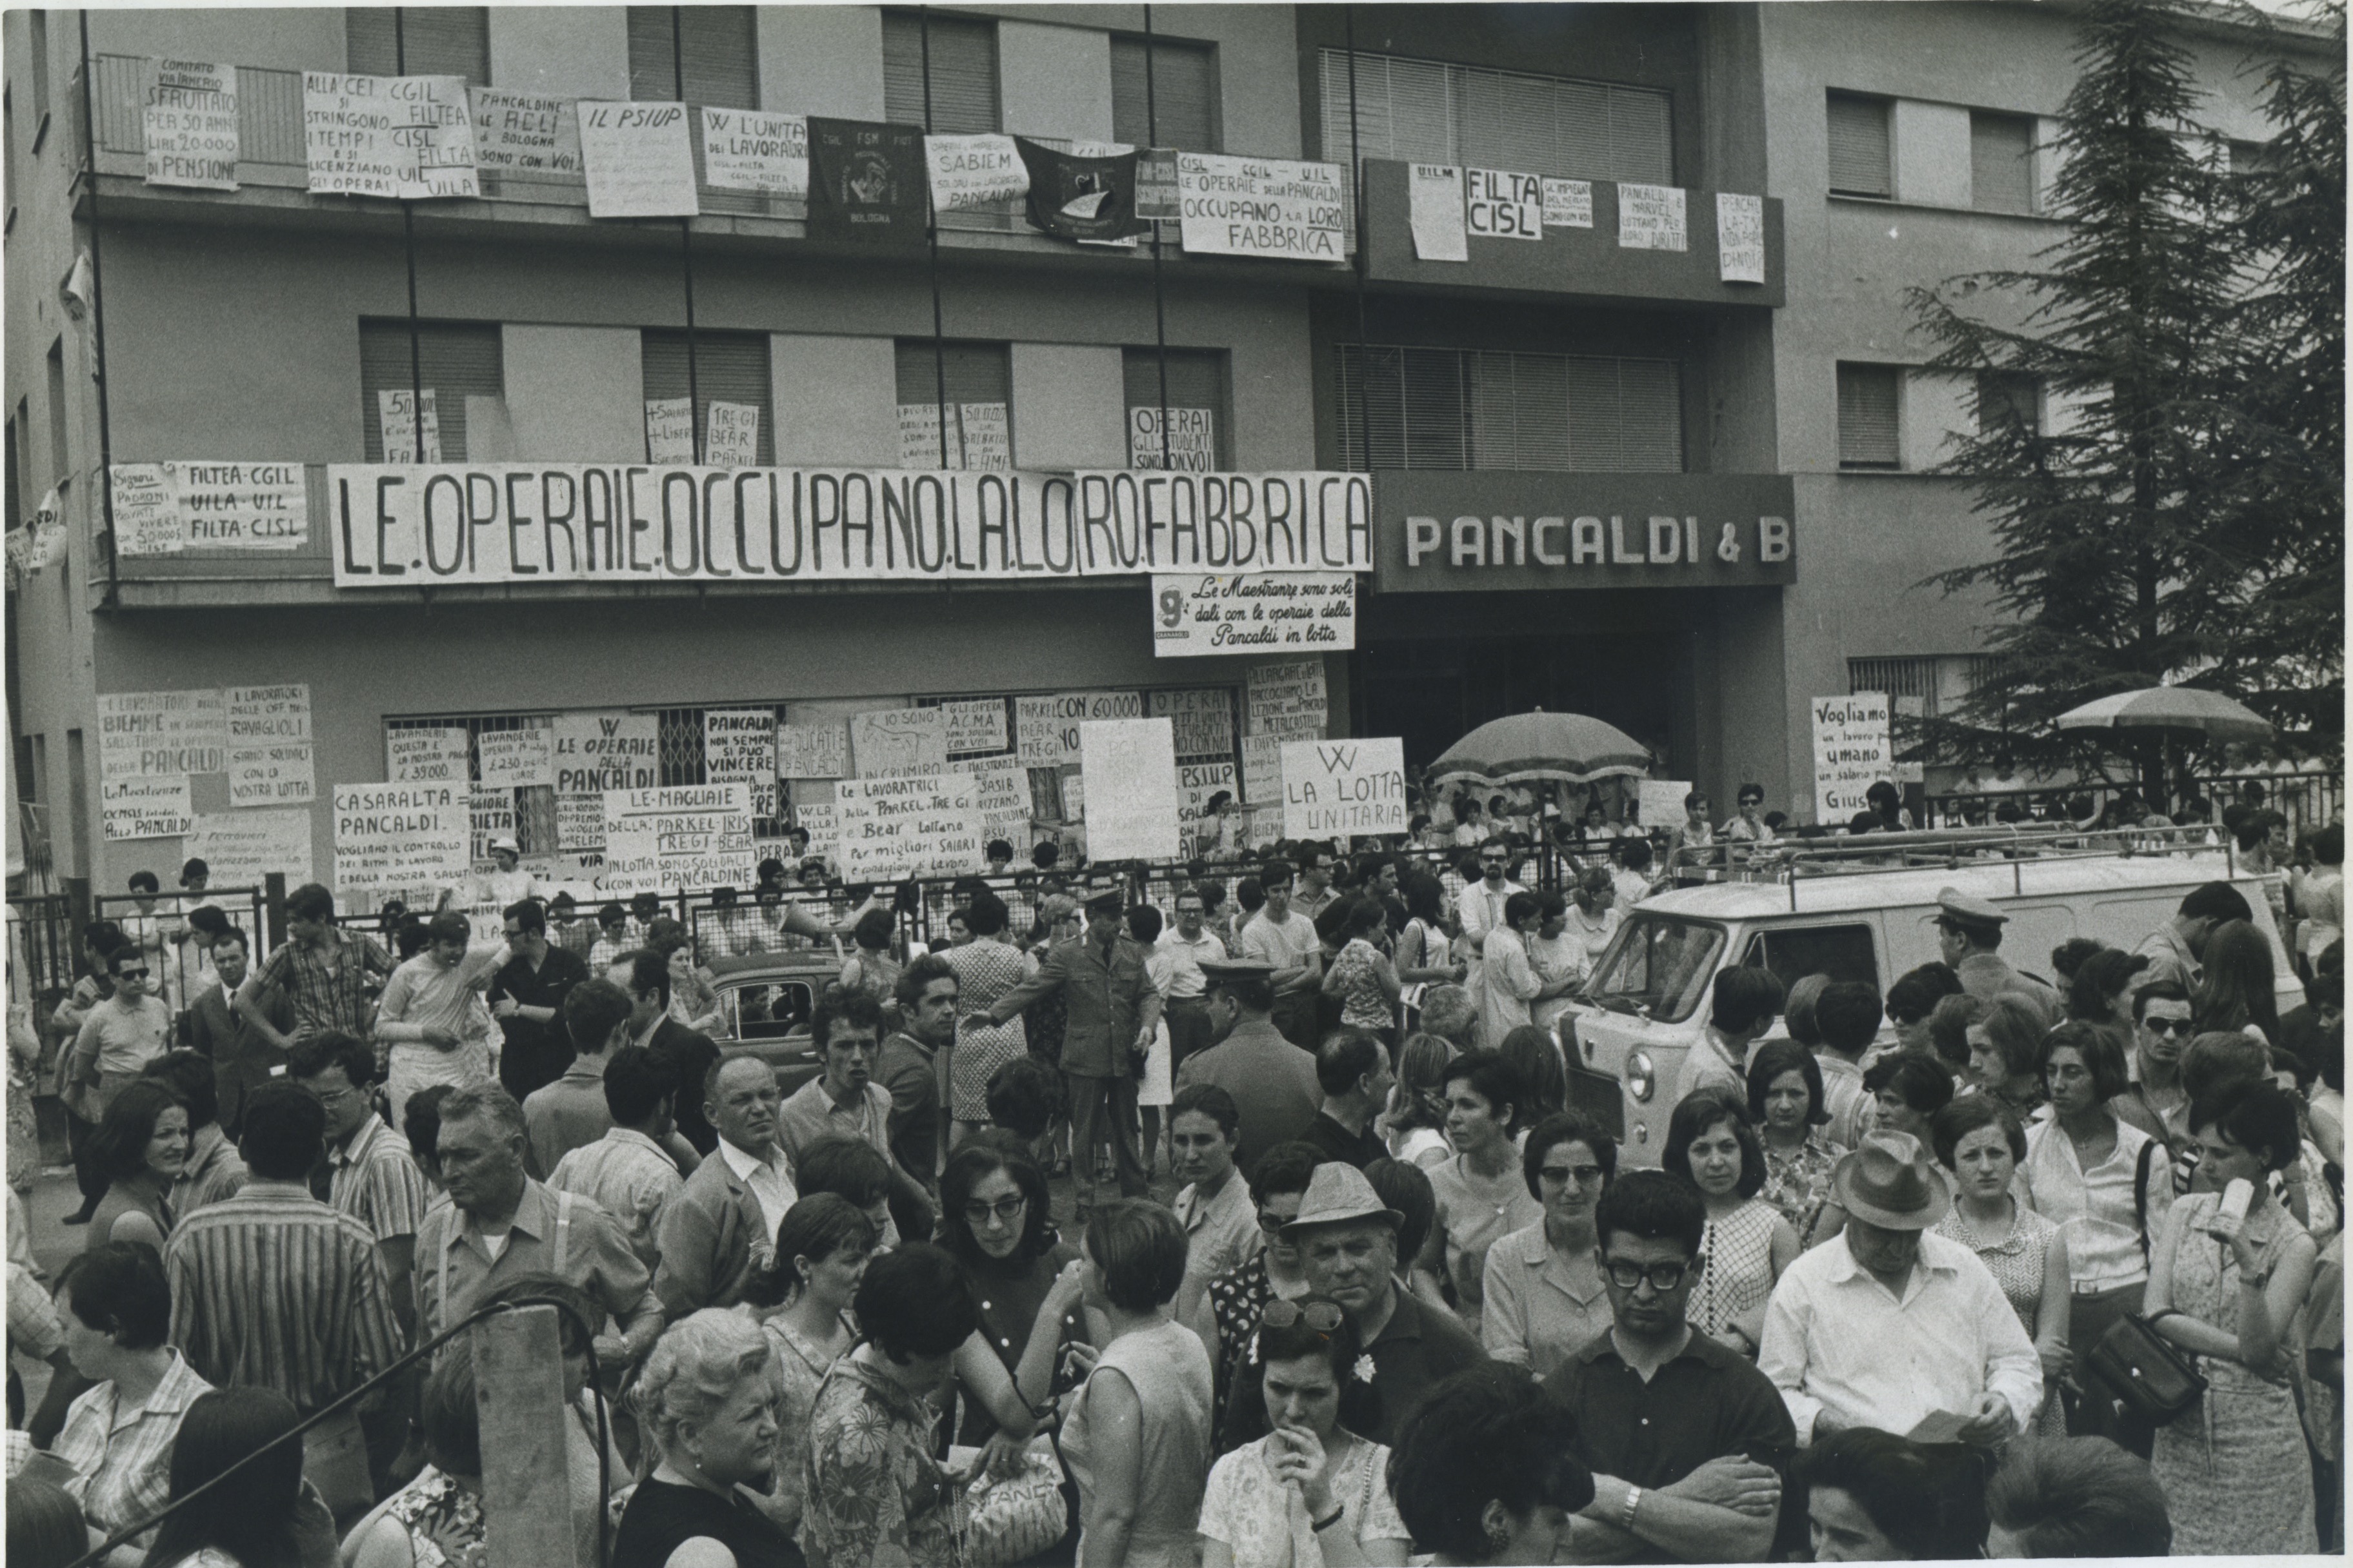 Fig. 6. Occupazione della Camiceria Pancaldi, Bologna, 4 Luglio 1968 (Enrico Pasquali).